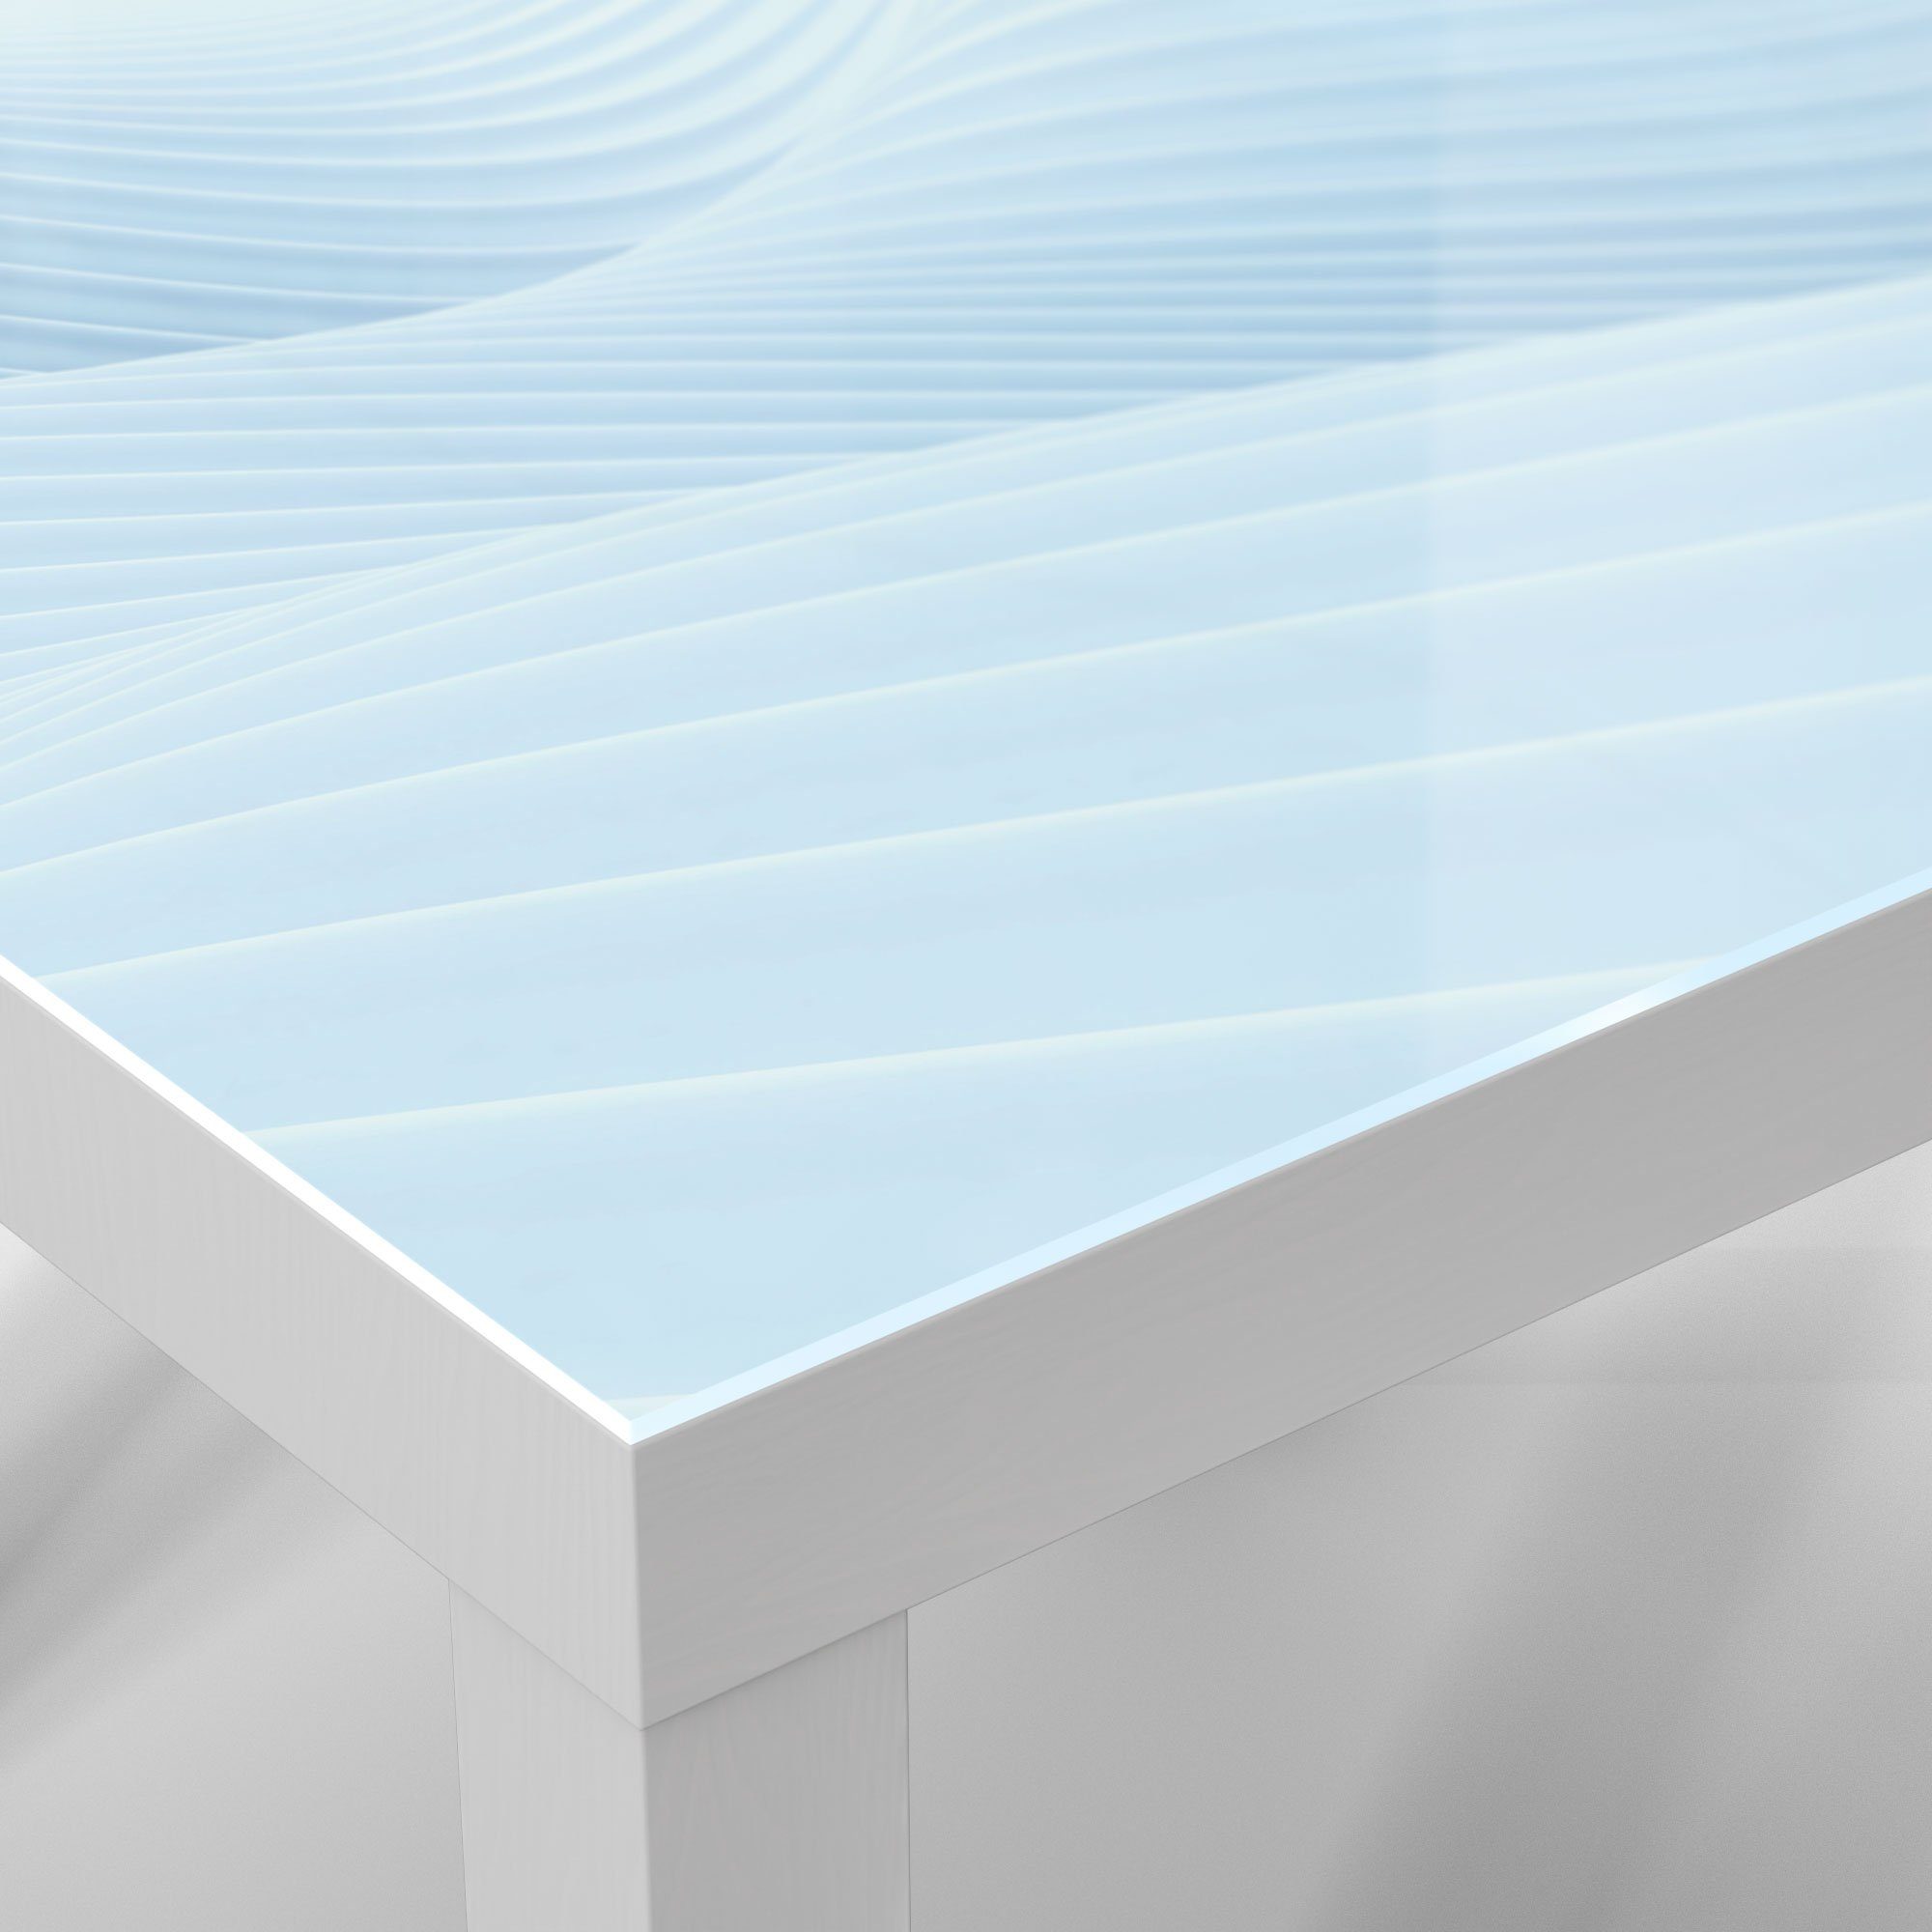 Glastisch modern Glas Weiß 'Futuristische Couchtisch Wogen', Beistelltisch DEQORI